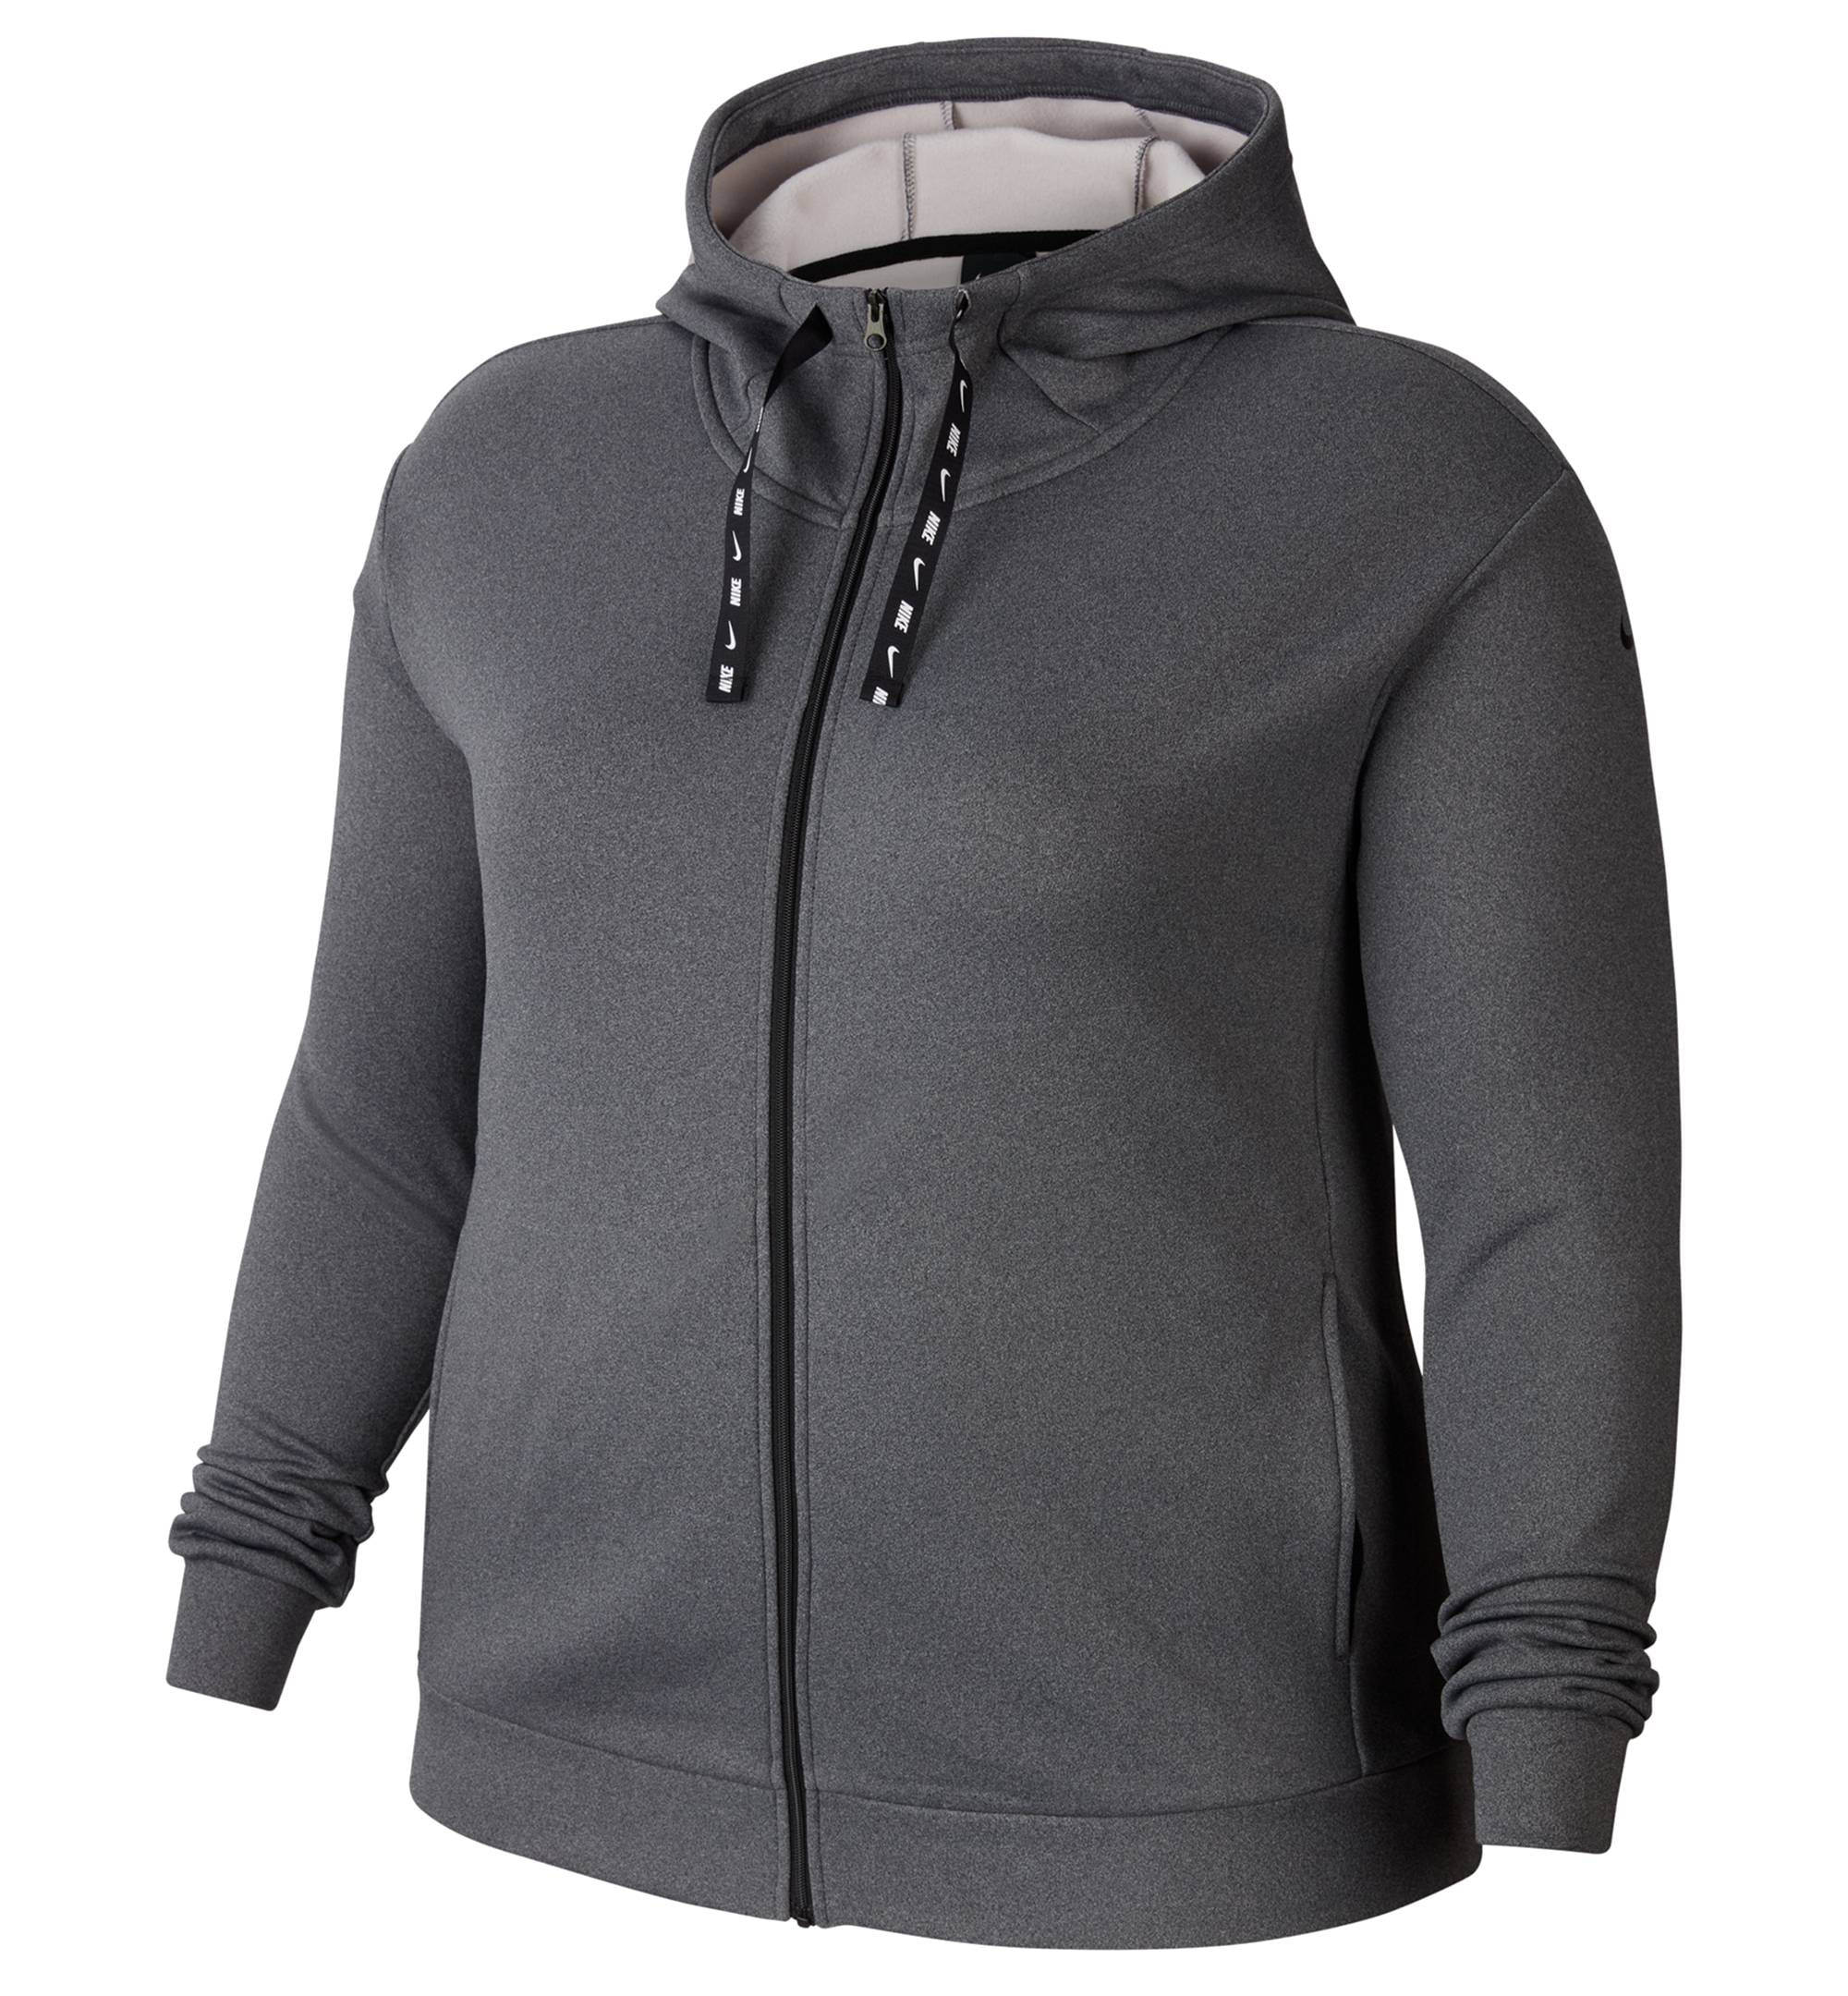 Nike fleece zip up hoodie